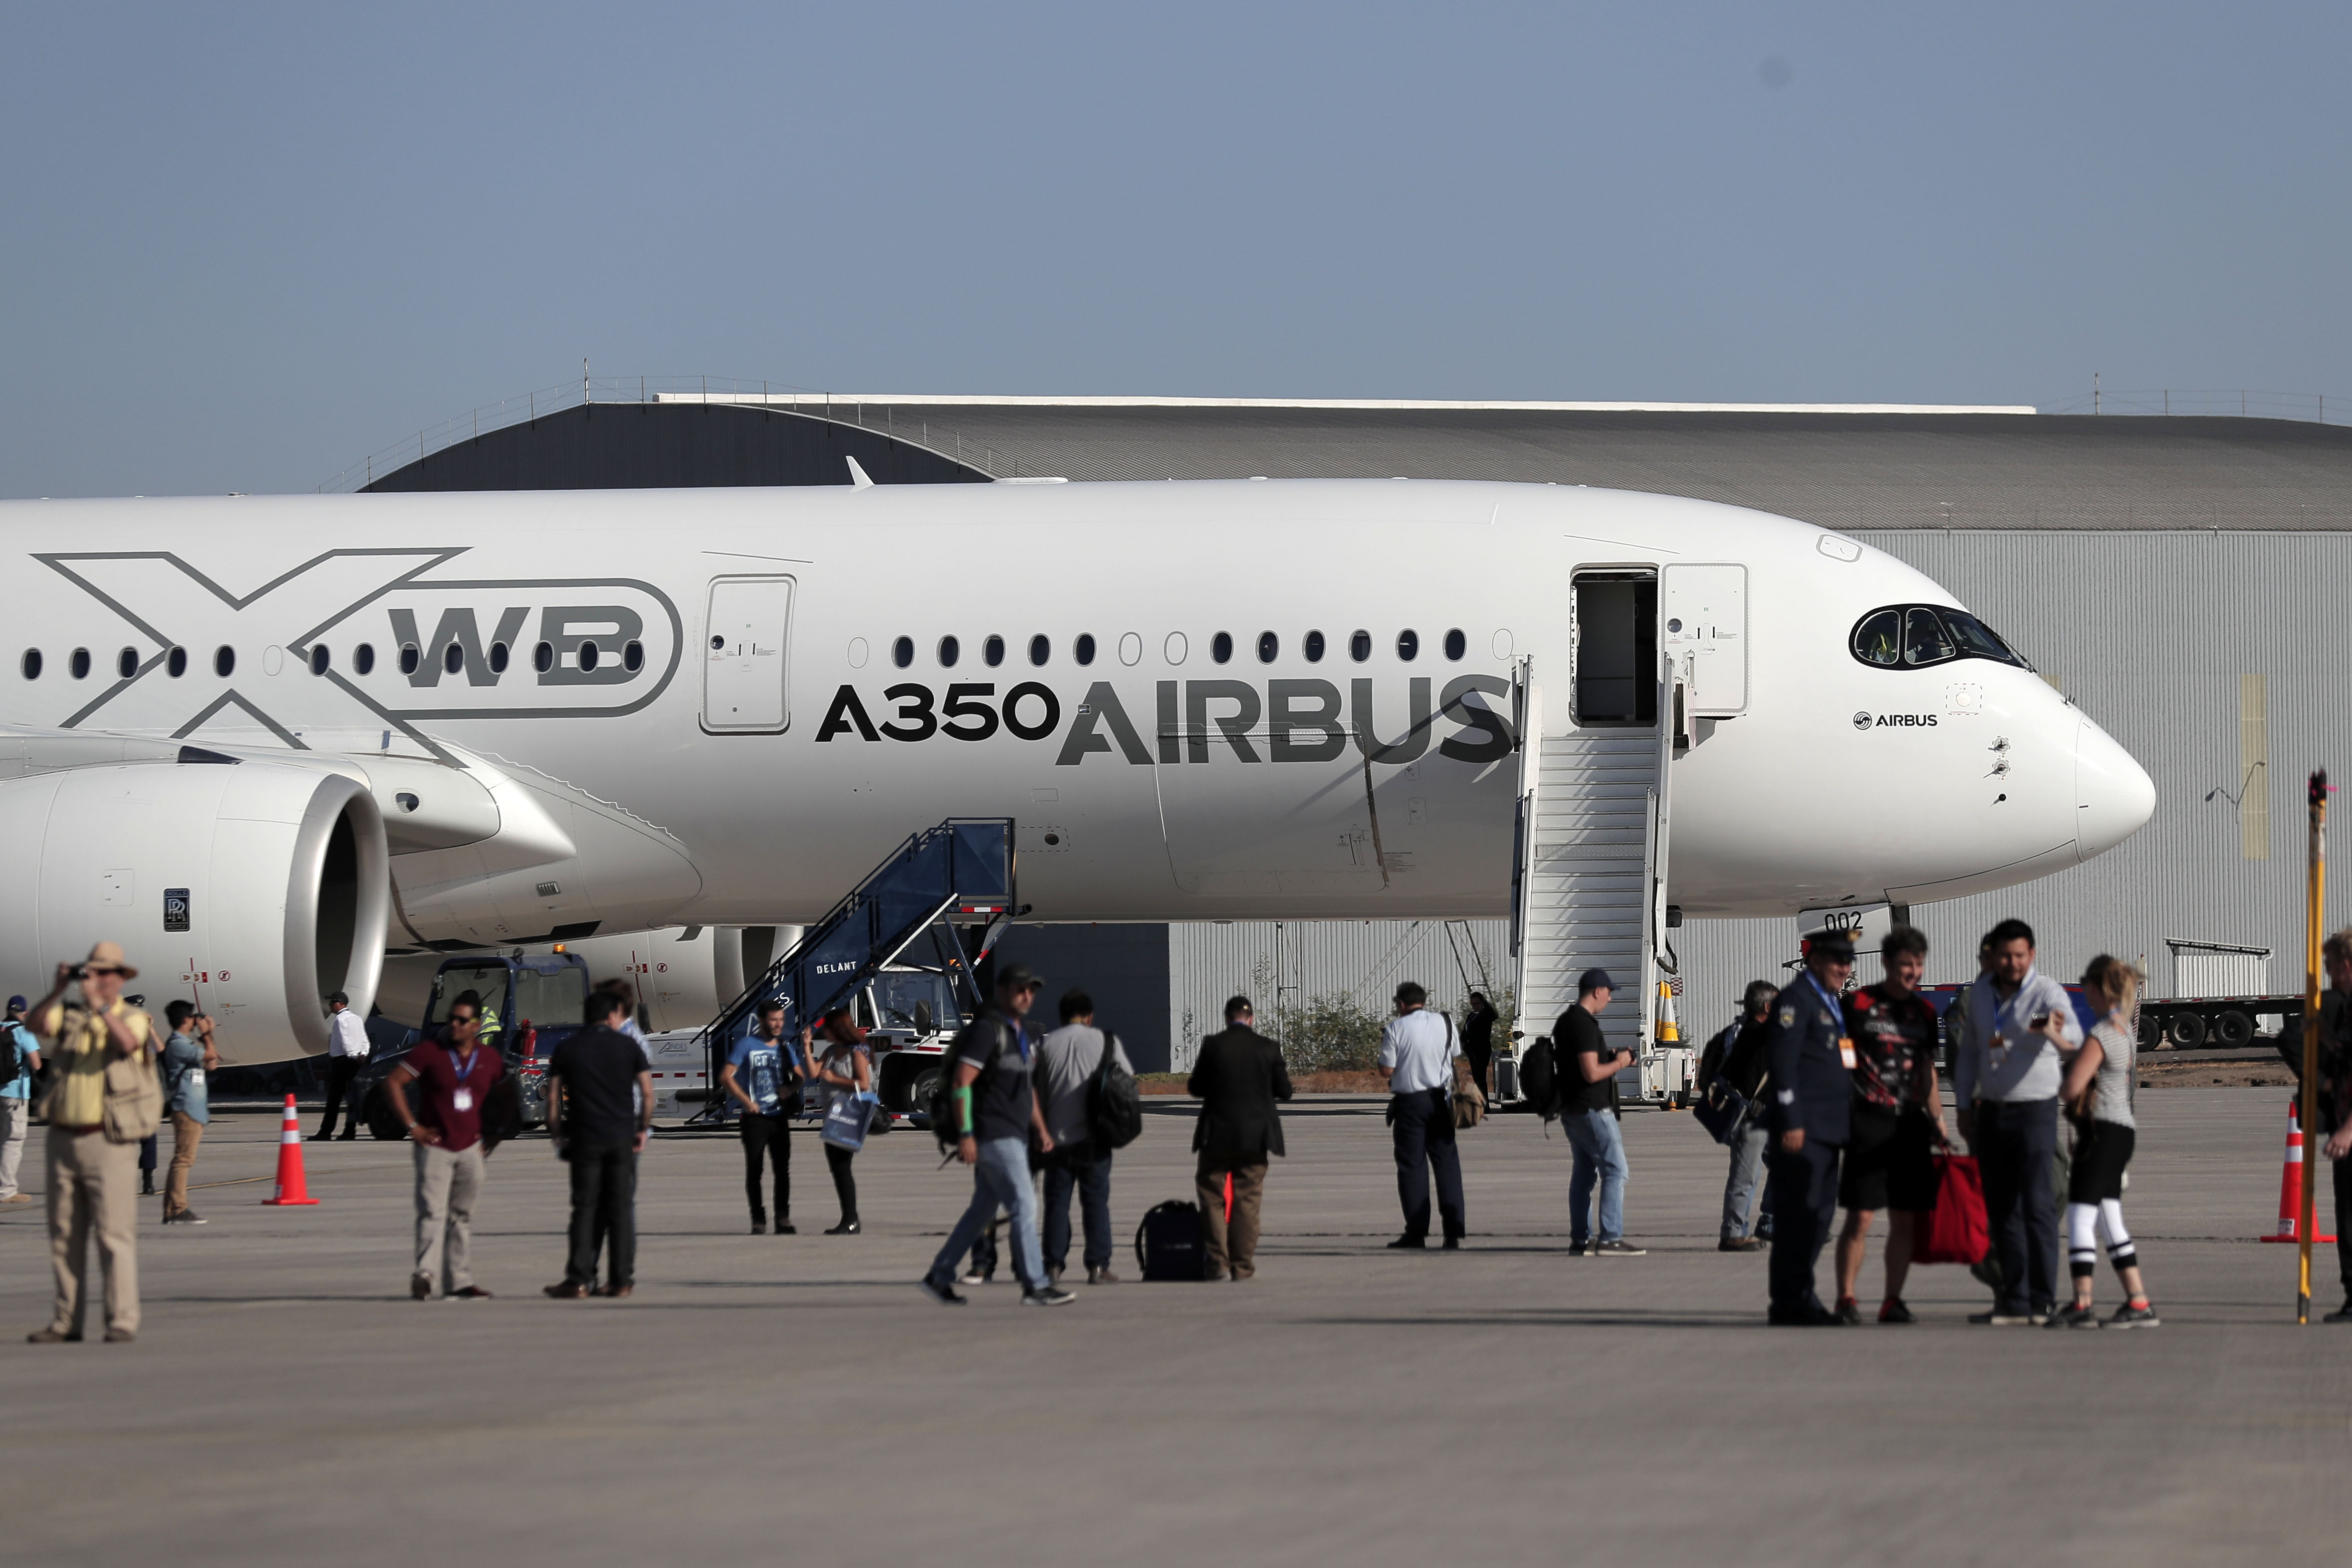 Santiago, 3 de abril de 2018
Airbus A350 XWB en su presentación durante Feria Internacional del Aire y del Espacio FIDAE 2018

Javier Torres/aton chile